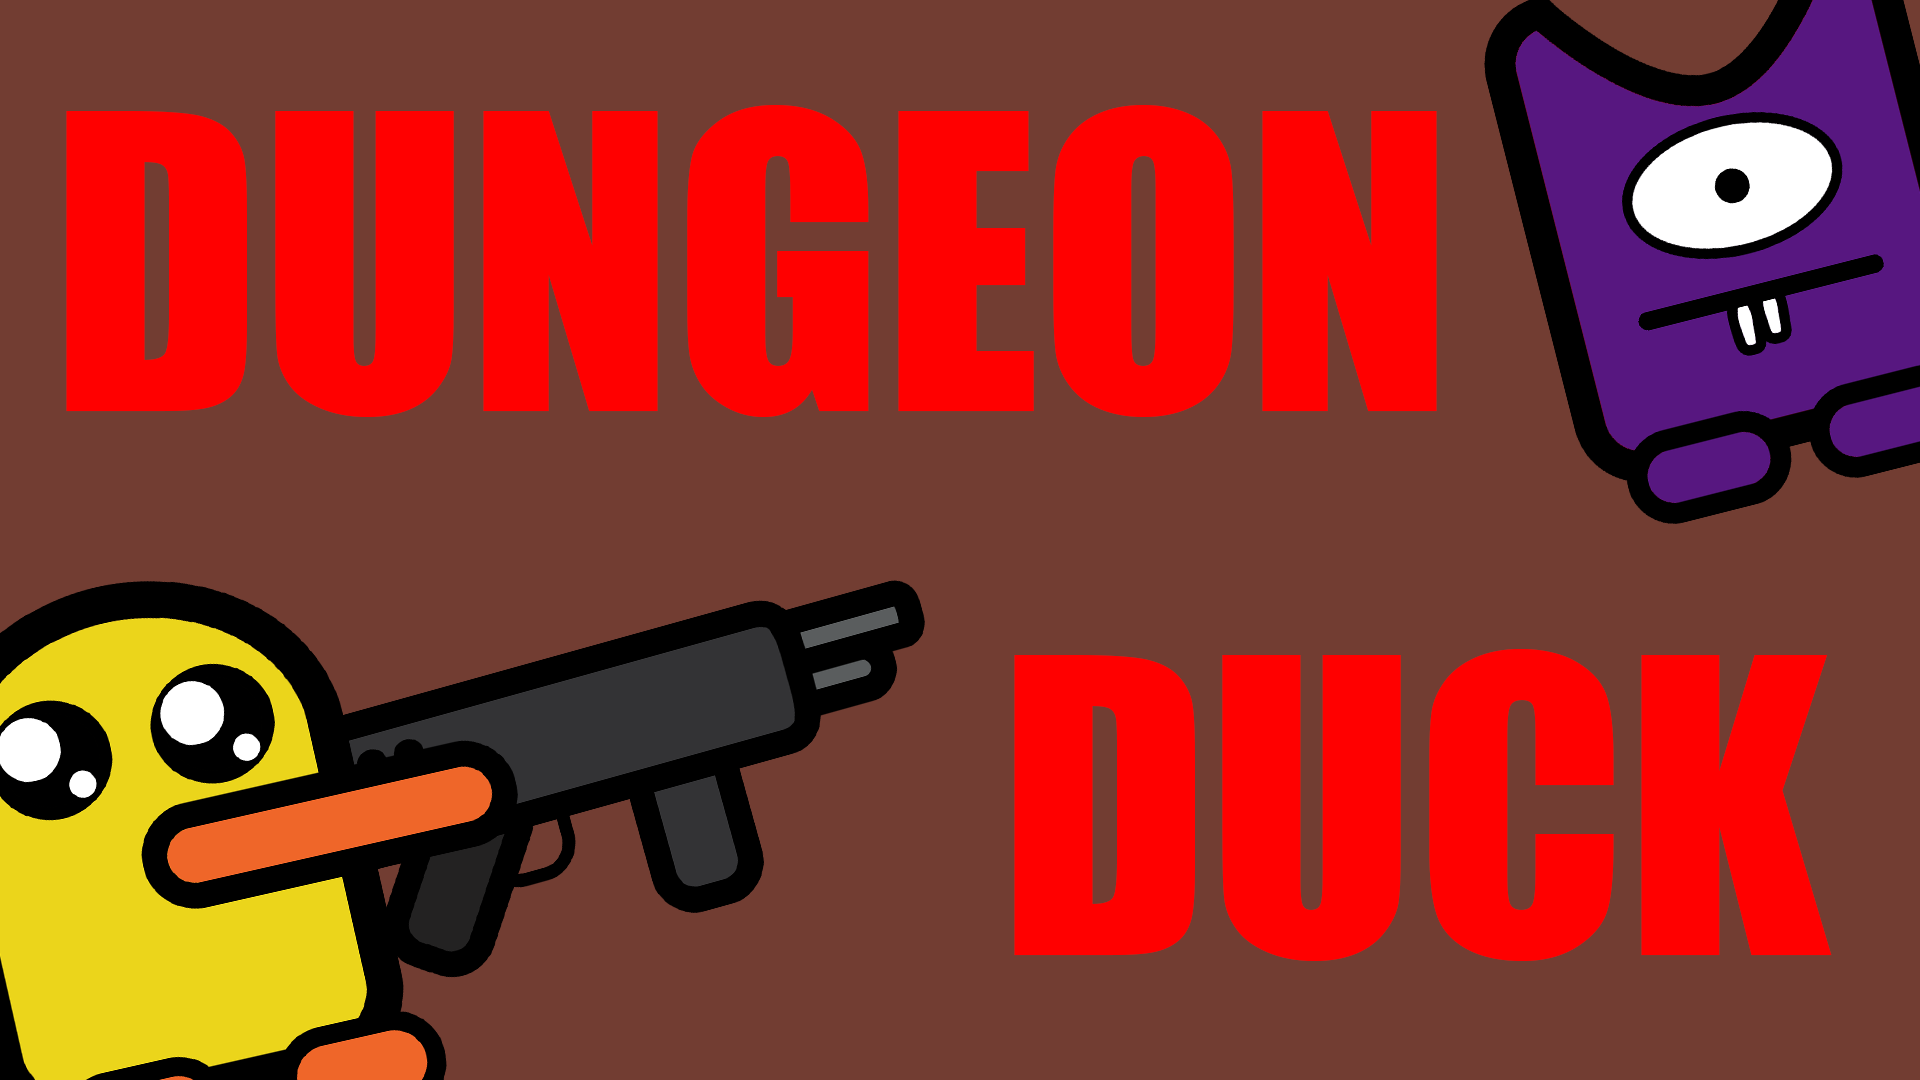 Dungeon Duck